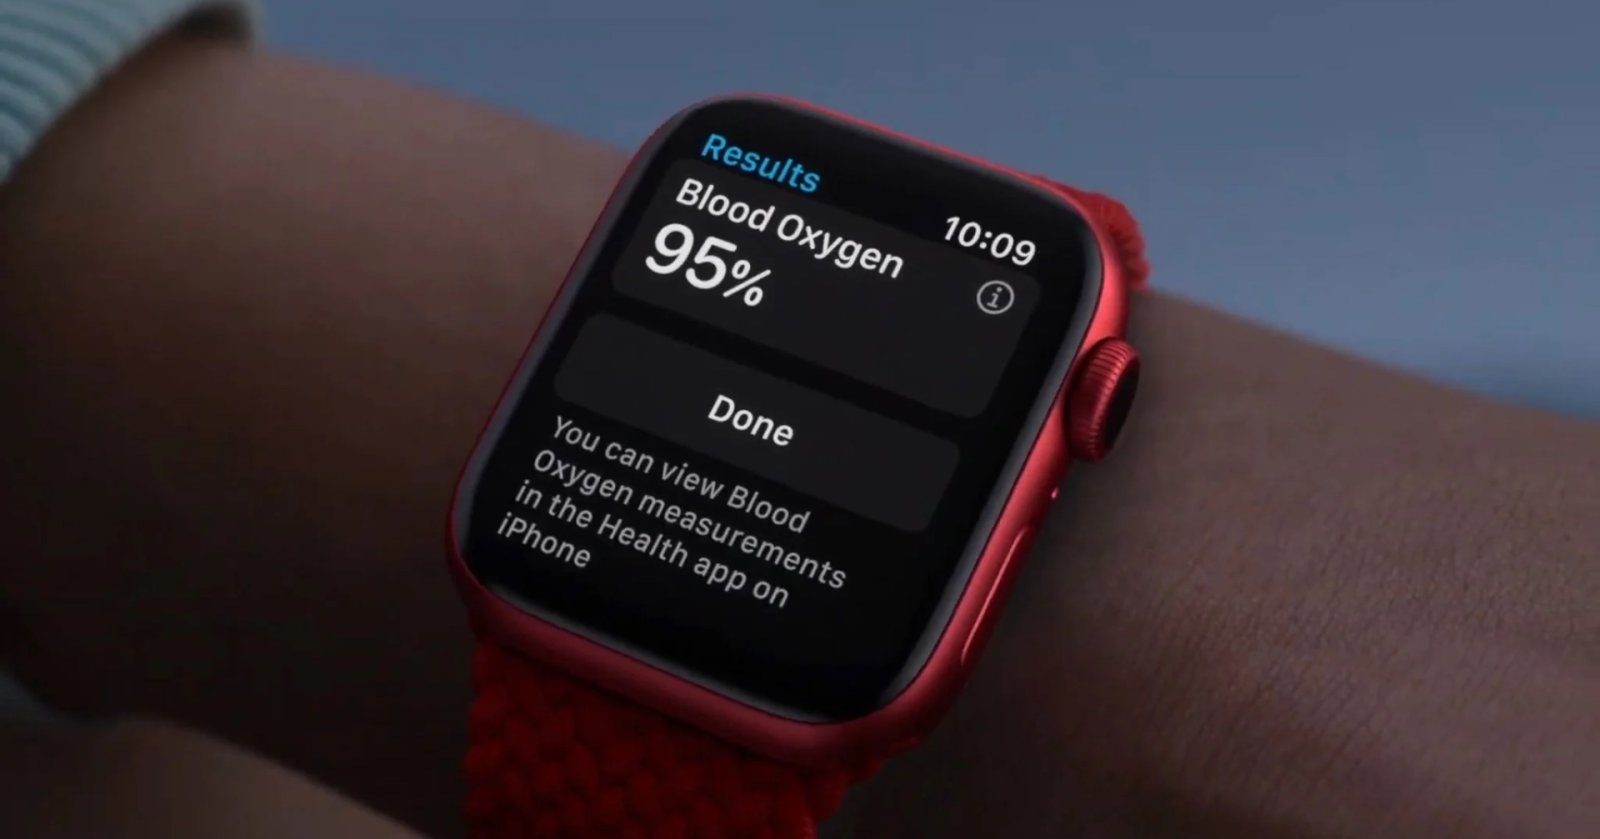 ทางการแล้ว Apple เตรียมวางจำหน่าย Apple Watch ที่ไม่รองรับฟีเจอร์ SpO2 ในสหรัฐอเมริกา